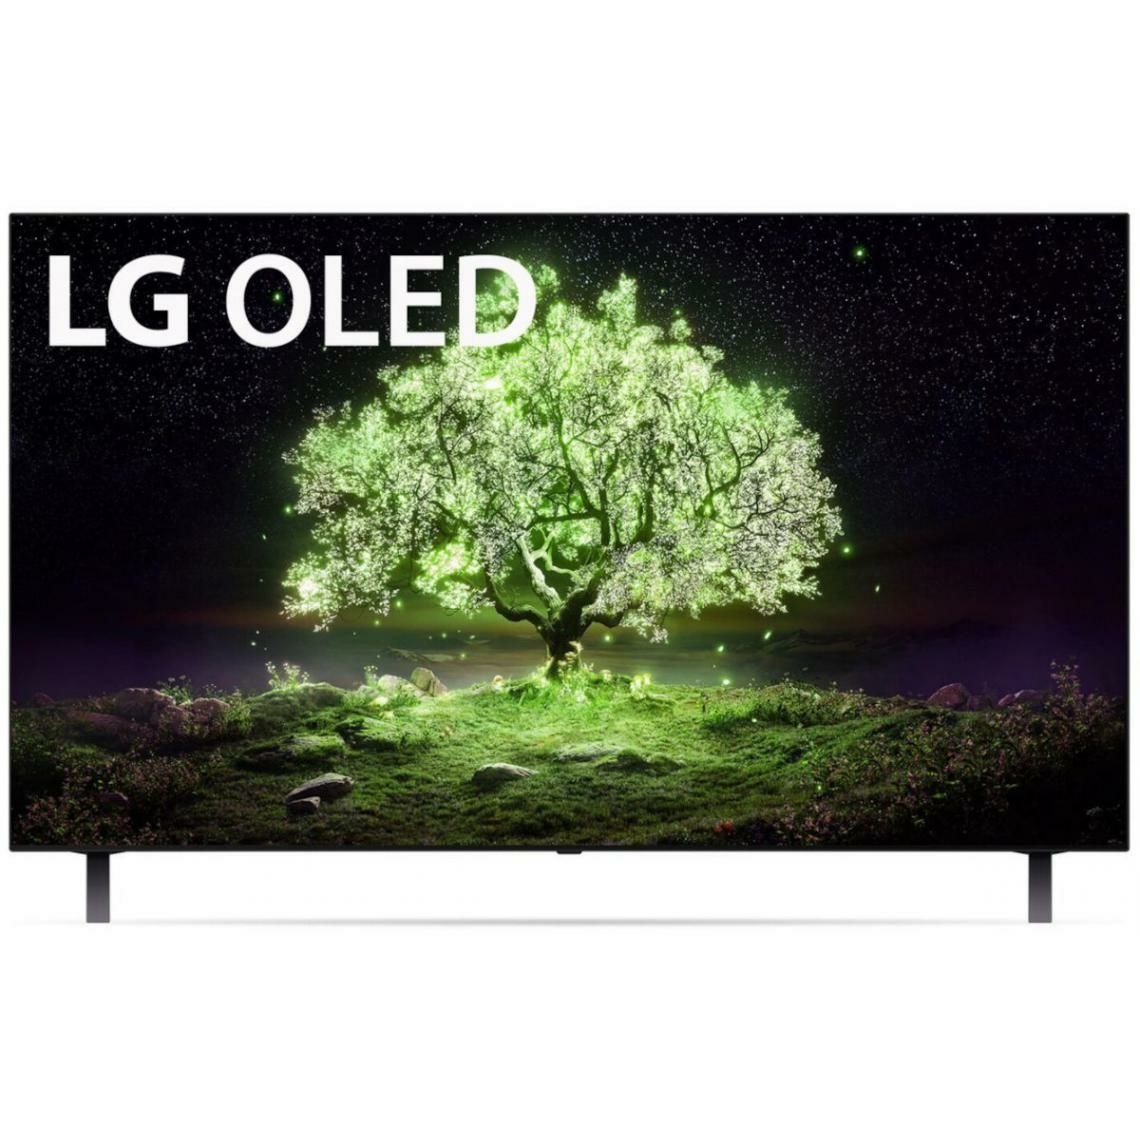 TV LG OLED 55A1